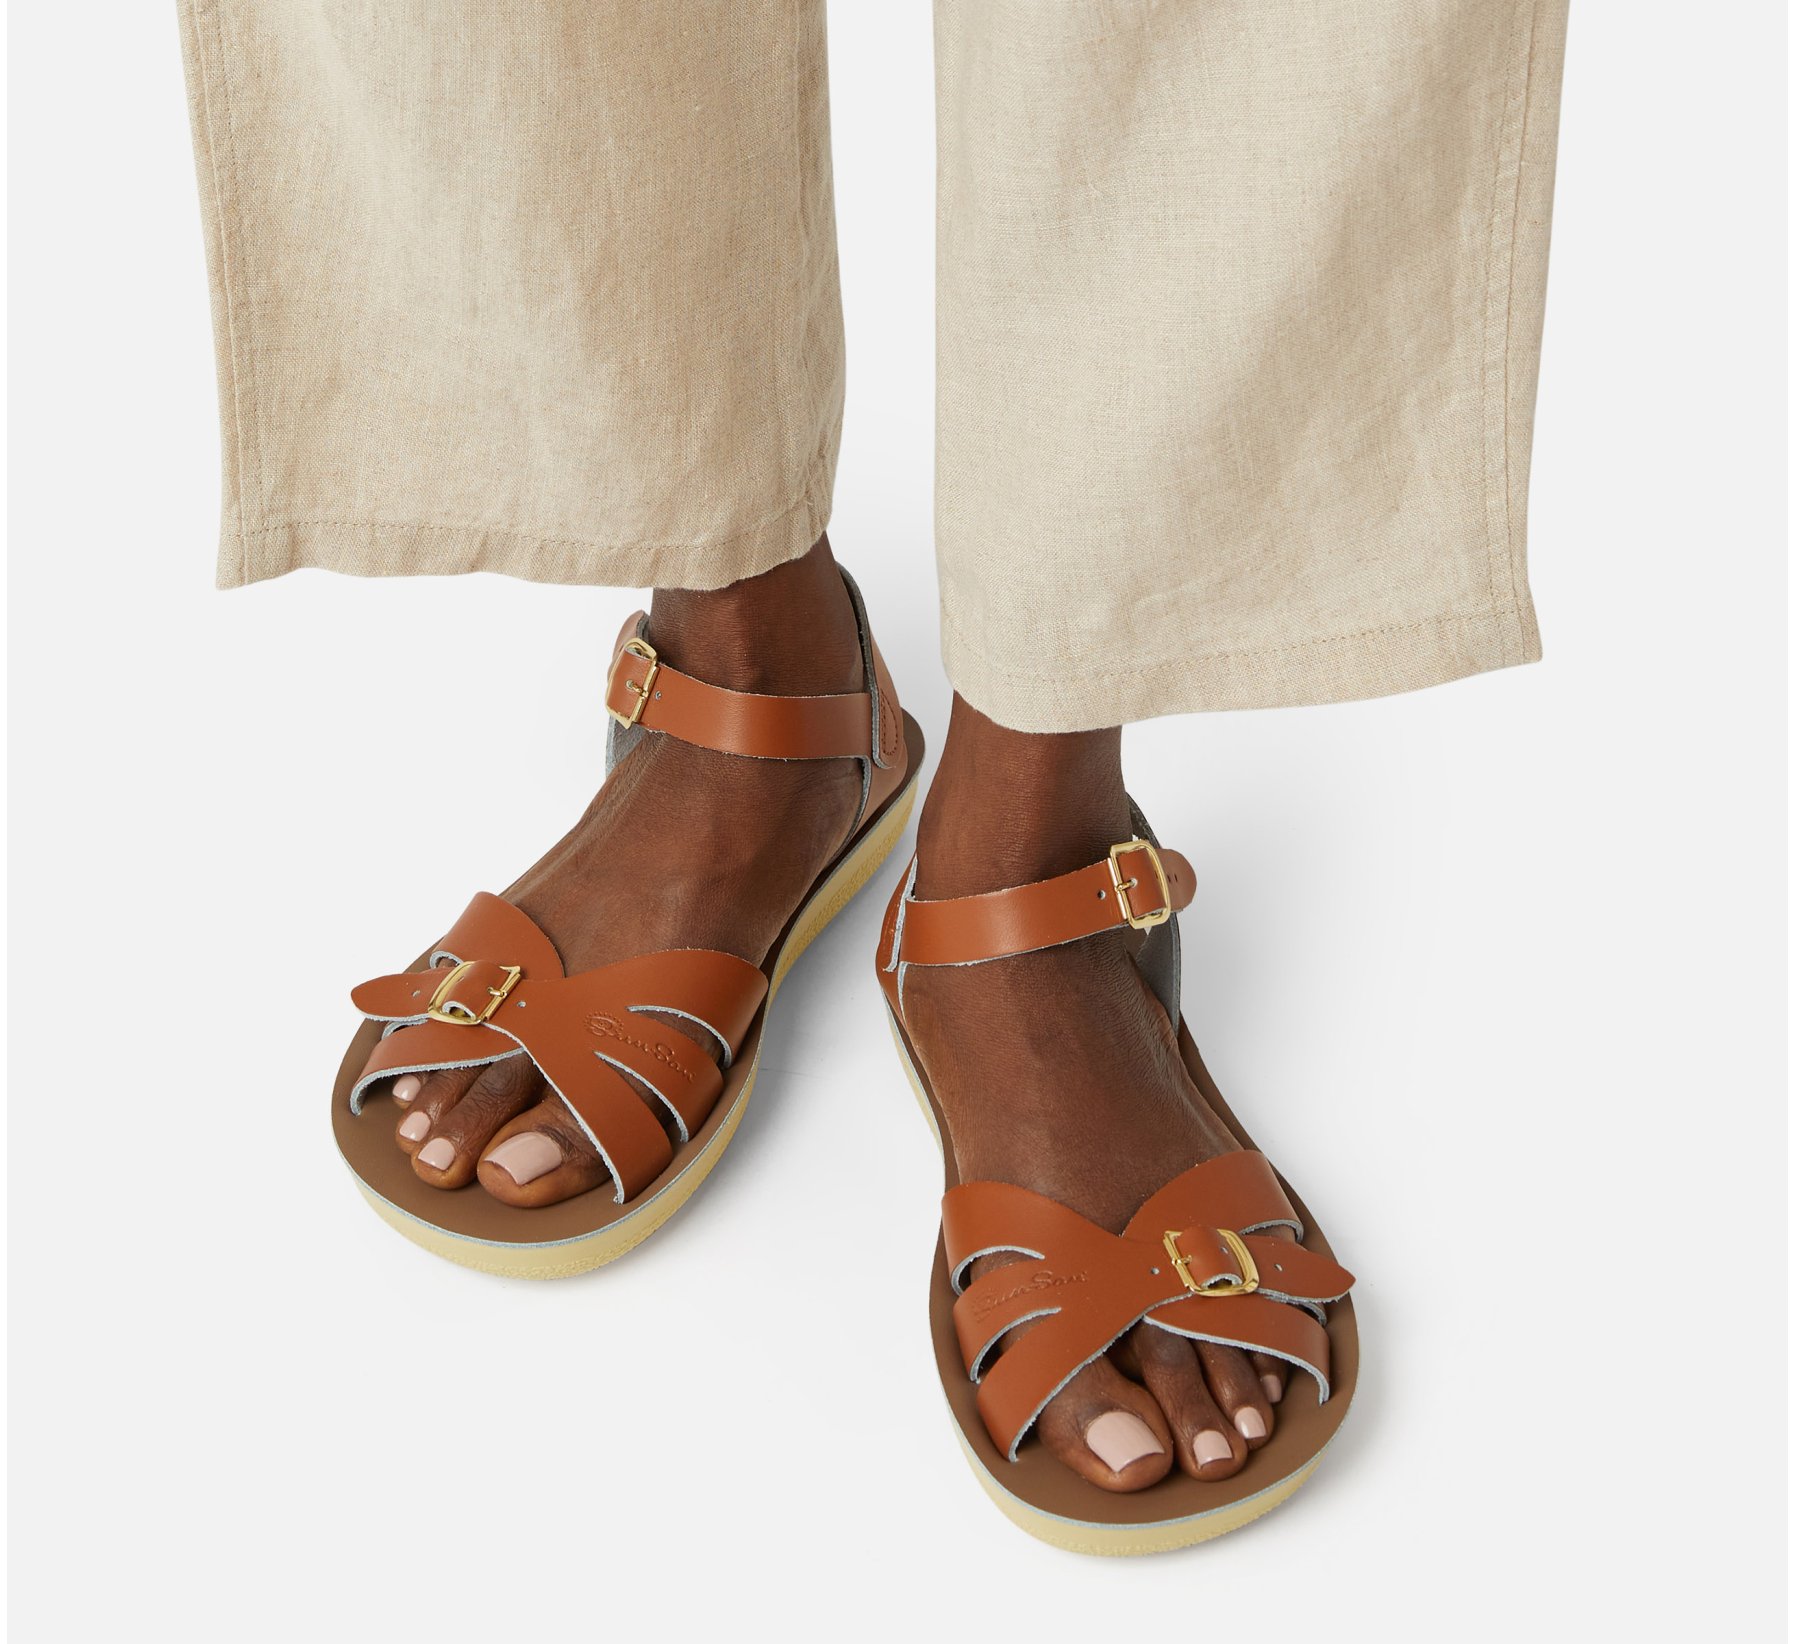 Boardwalk Damens Sandalen in Tan - Salt Water Sandals